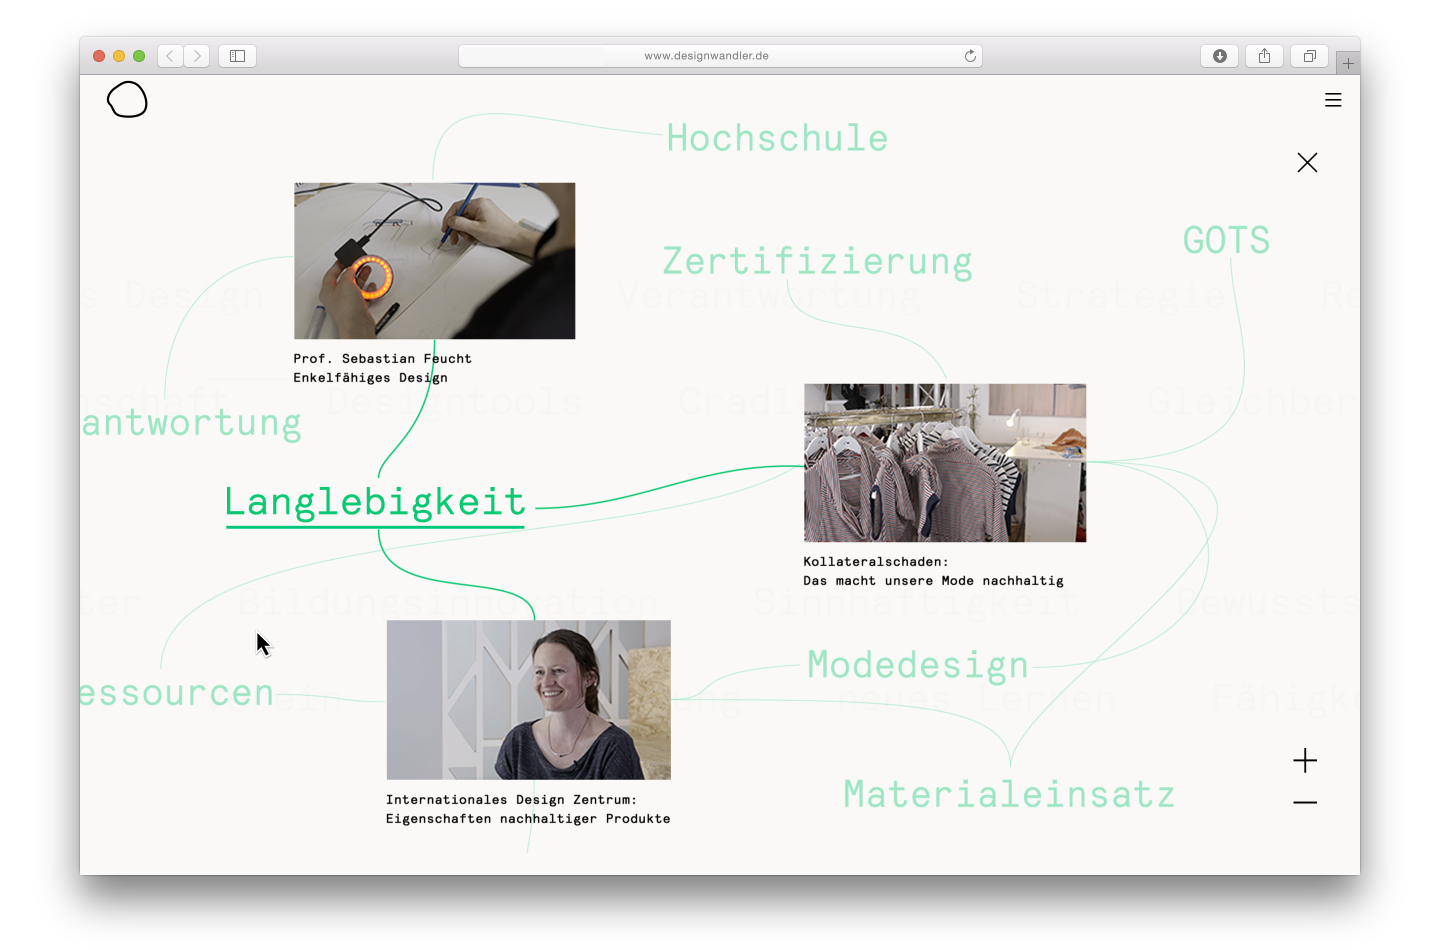 Designwandler – Eine interaktive Dokumentation zum sozial-ökologischen Design